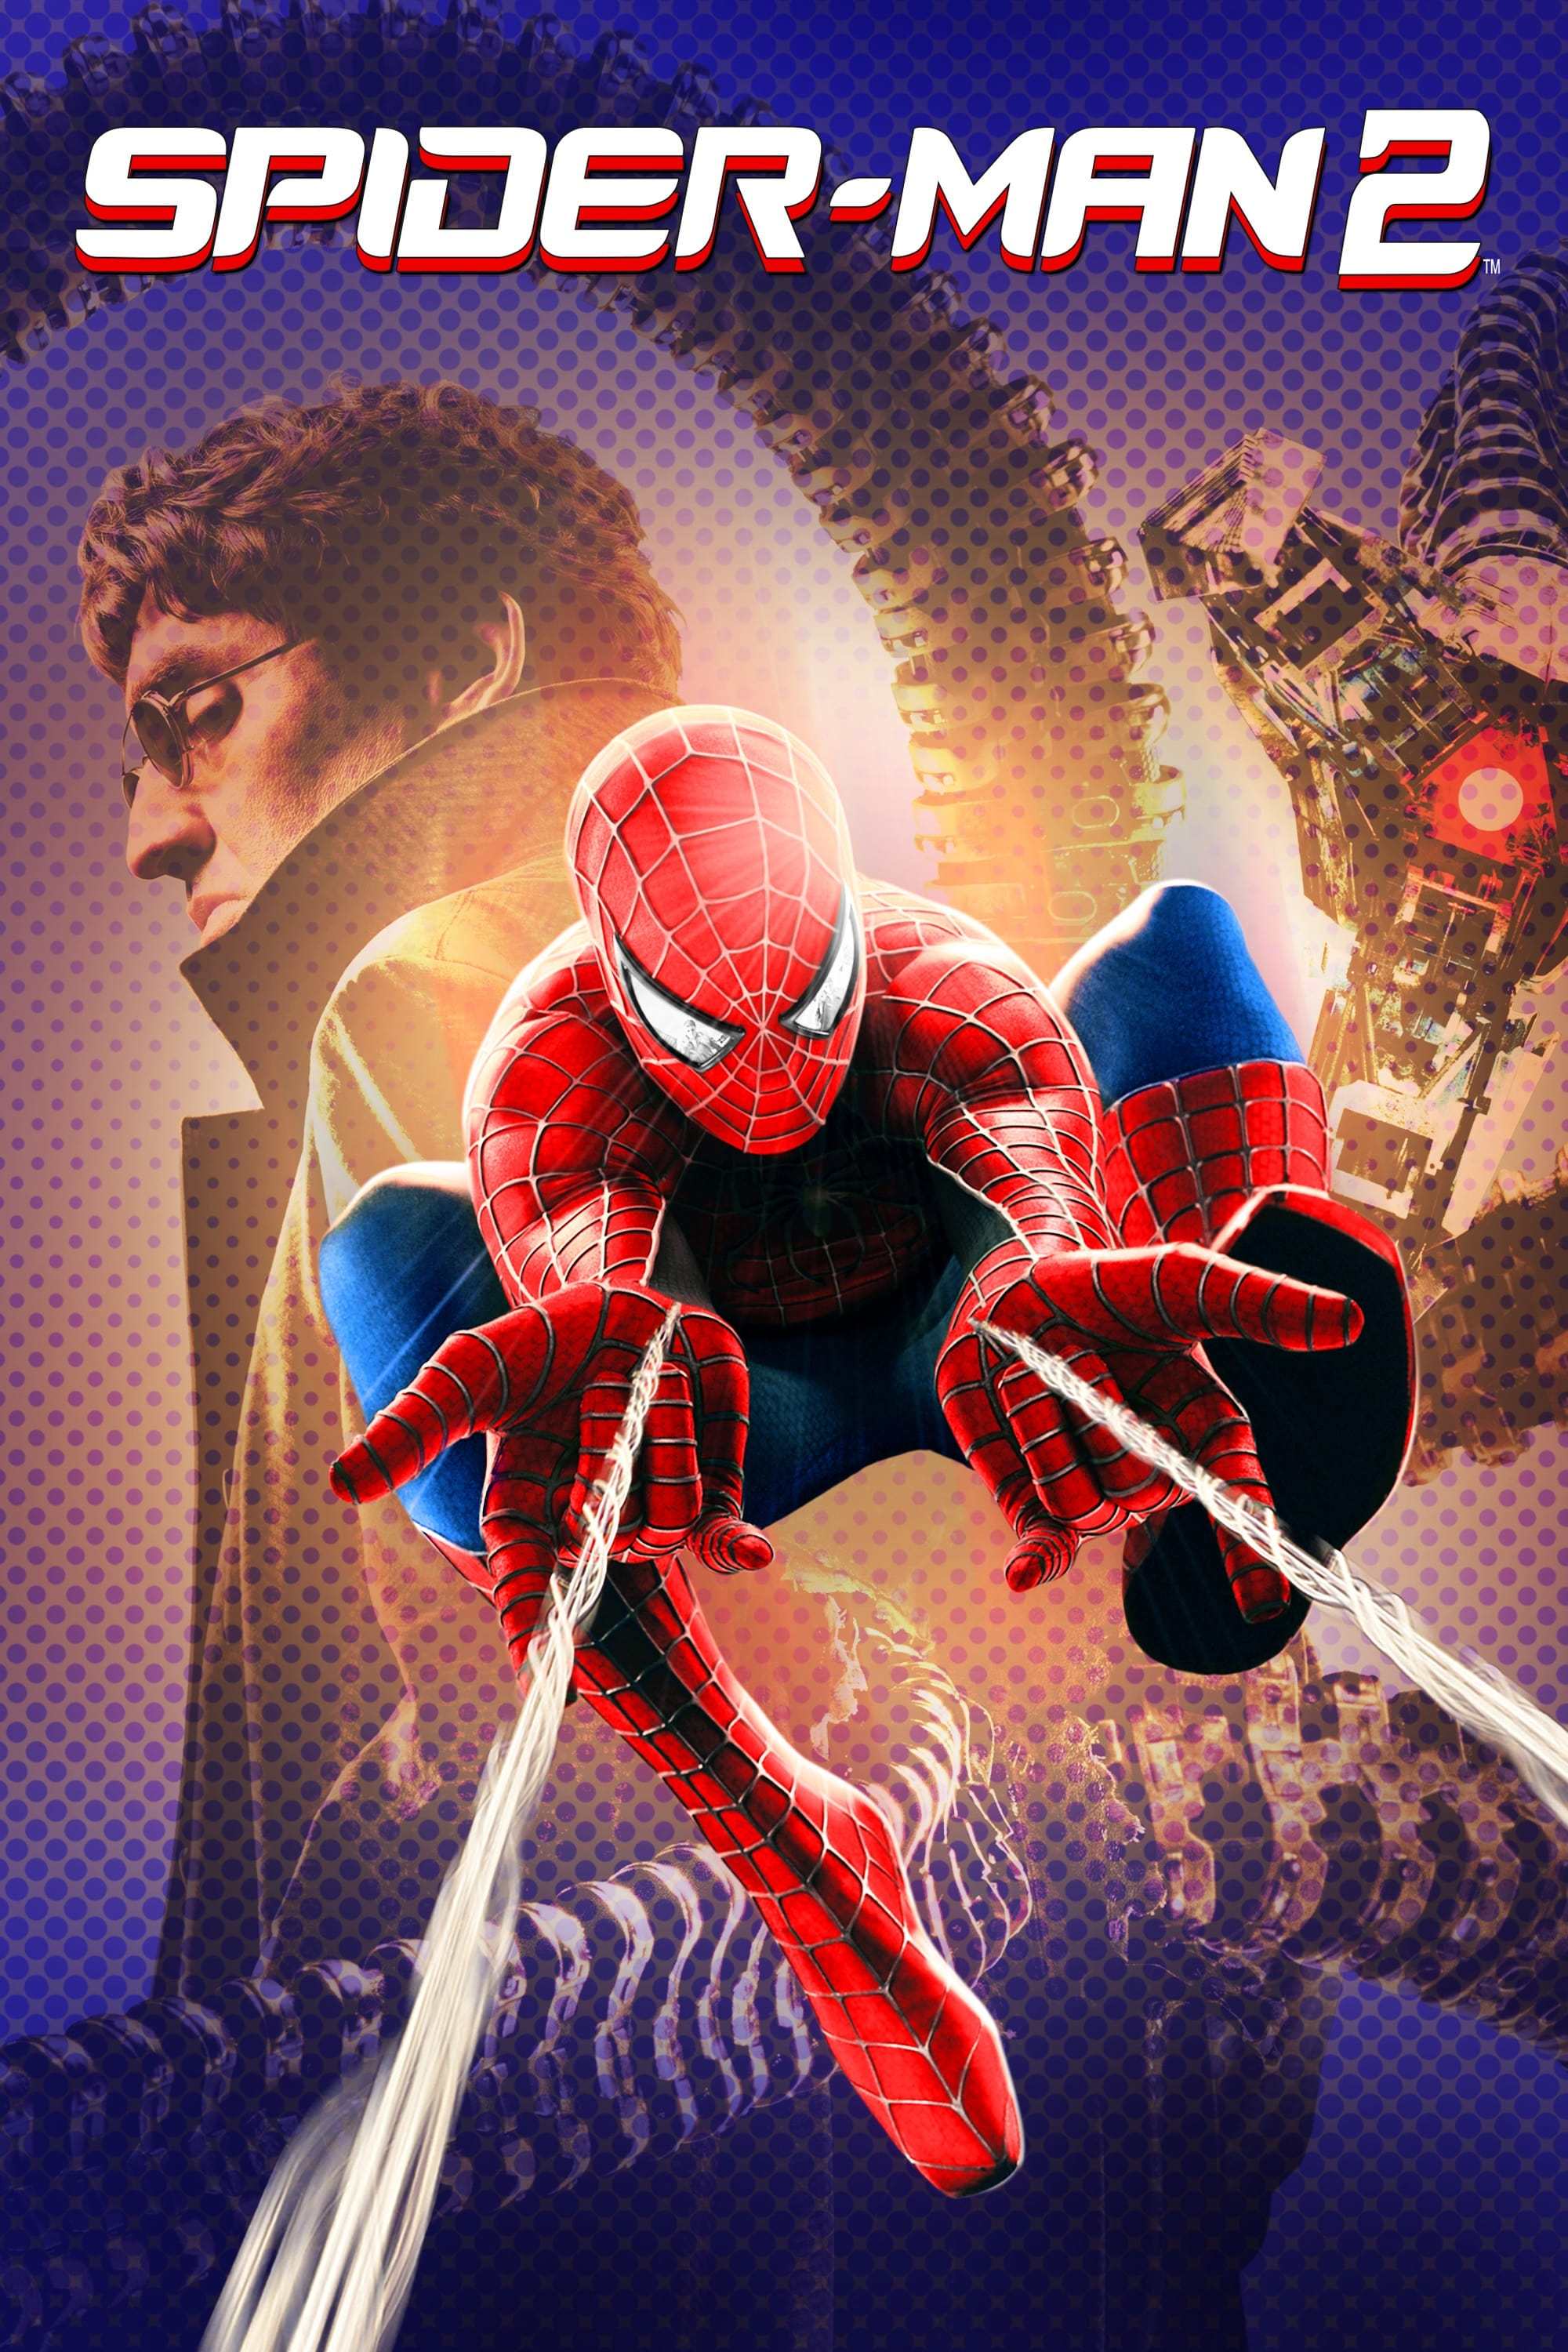 Spider-Man 2 - Wikipedia